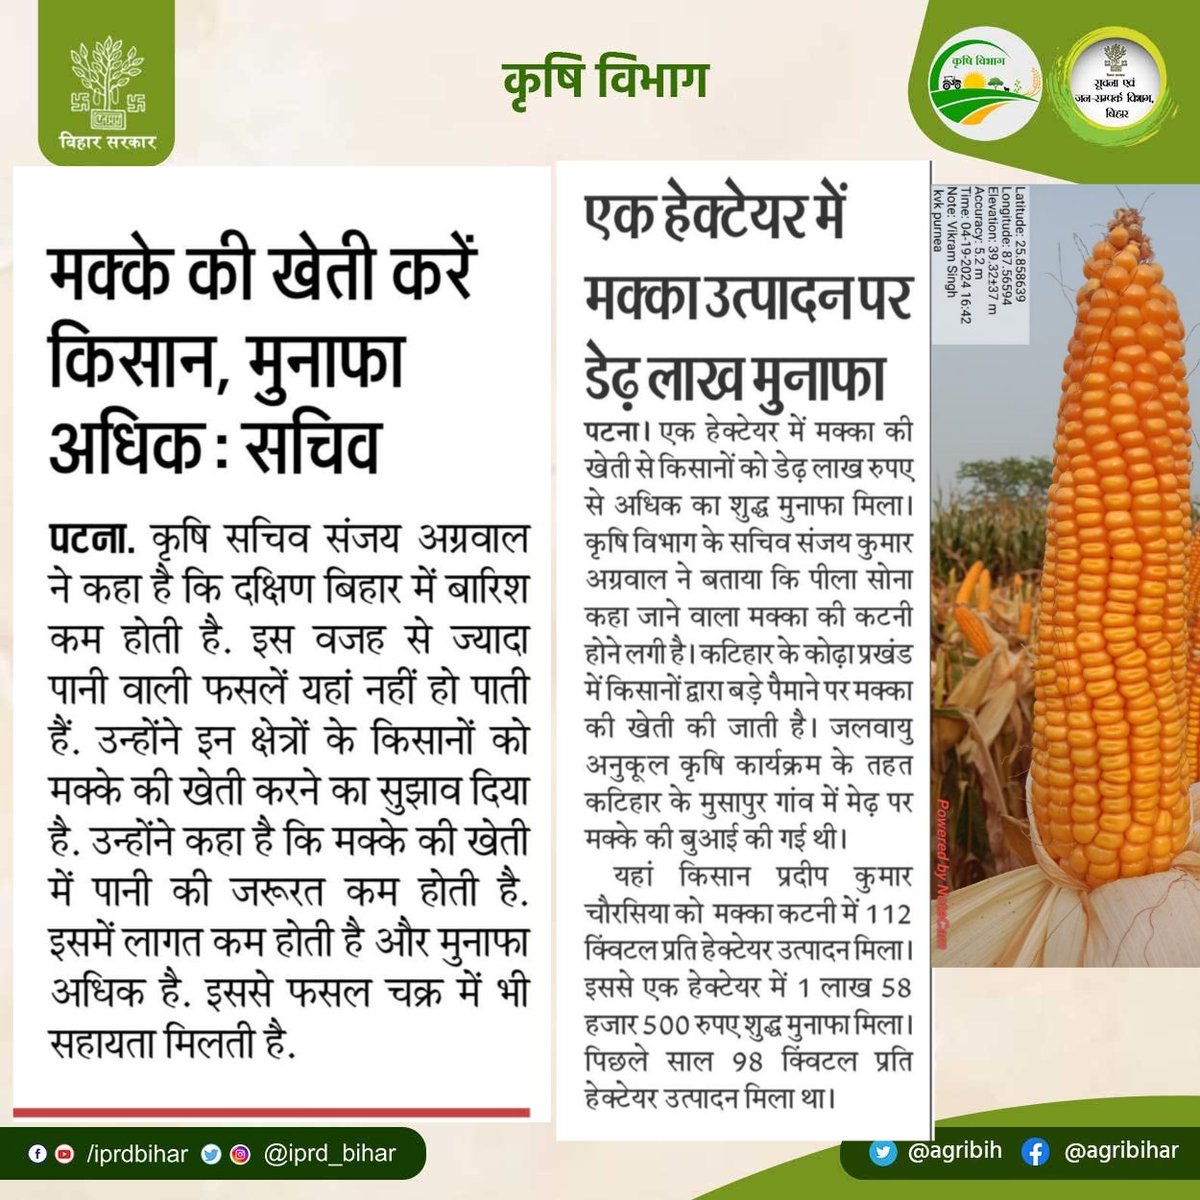 सचिव कृषि विभाग श्री @SAgarwal_IAS जी ने कहा कि मक्के की खेती करें किसान, मक्का की खेती में लागत कम तथा मुनाफा अधिक है। @abhitwittt @BametiBihar @Bau_sabour @Rpcau_pusa @BISA__India @AgriGoI @IPRD_Bihar